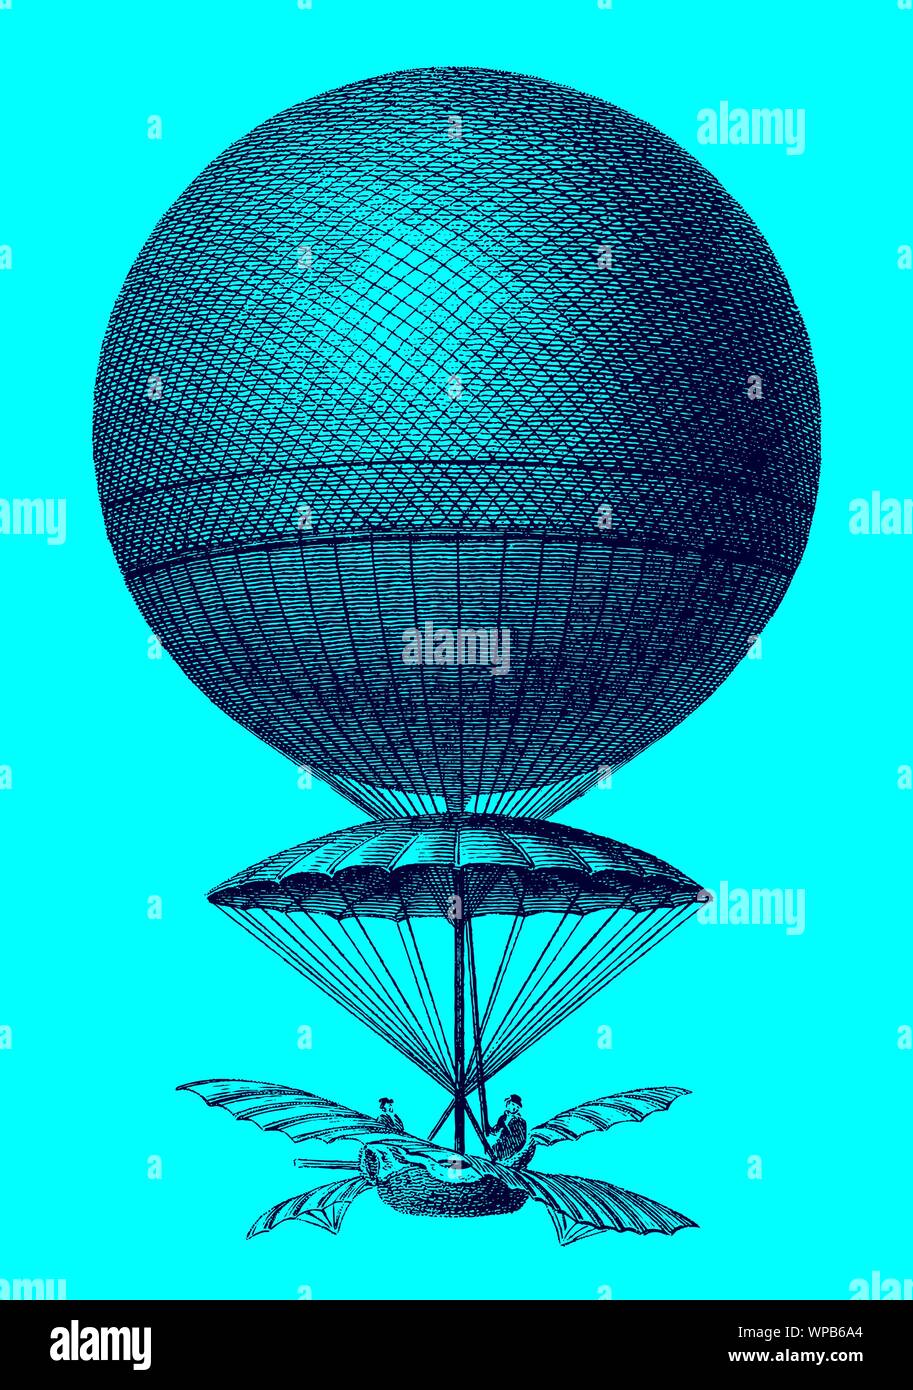 Historische Ballon von Jean-Pierre Blanchard von 1785 absteigend vor einem blauen Hintergrund. Abbildung: Nach einem Stich aus dem frühen 19 Cent Stock Vektor